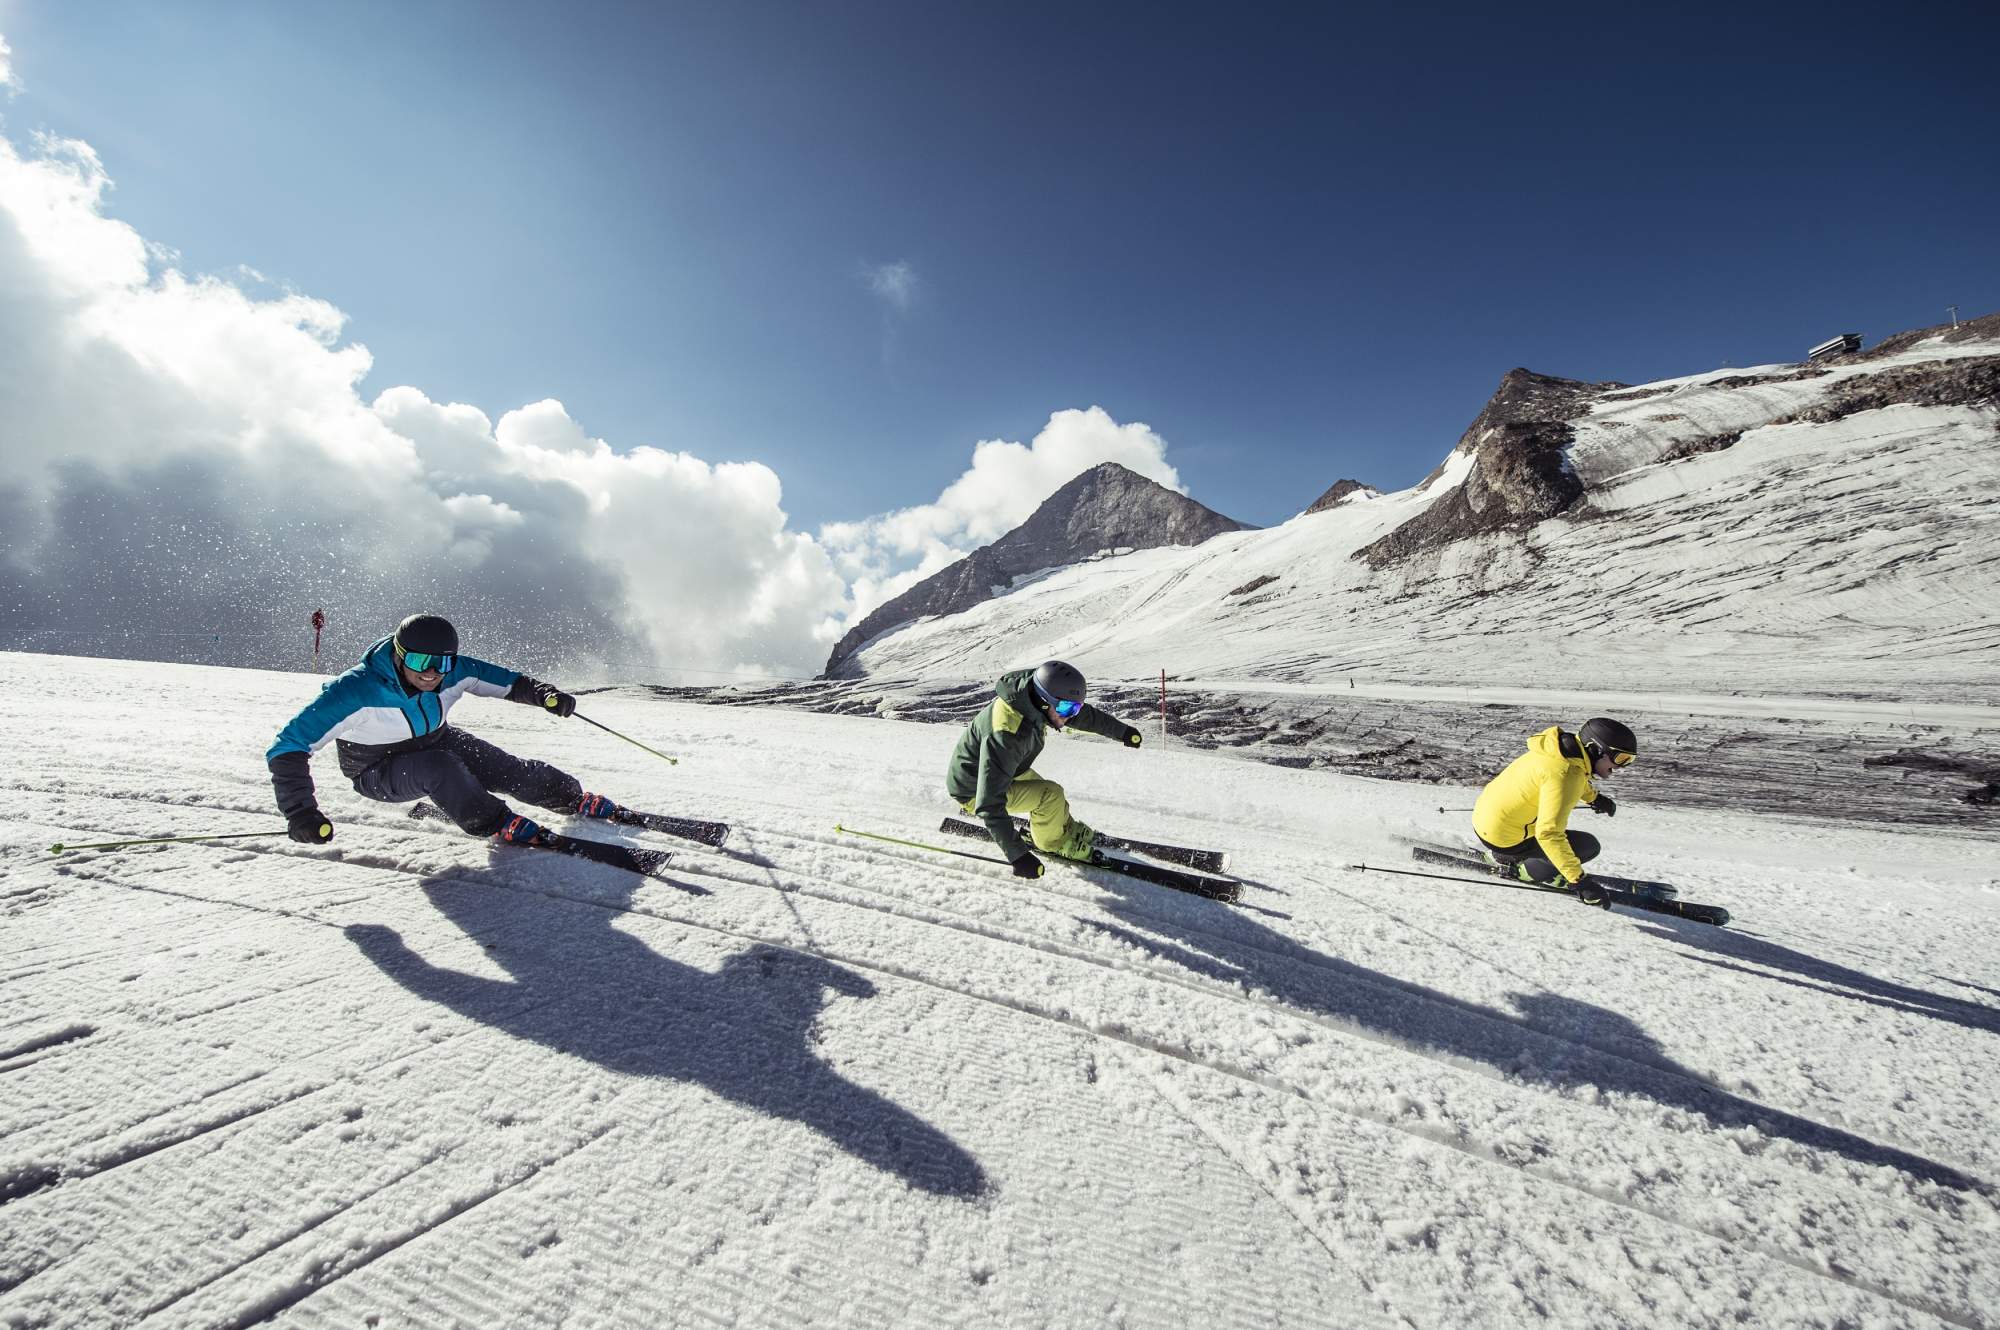 Горные лыжи Elan Amphibio 14Ti Fusionx + Emx 11 Fusionx 2021, blue/green, 168 см